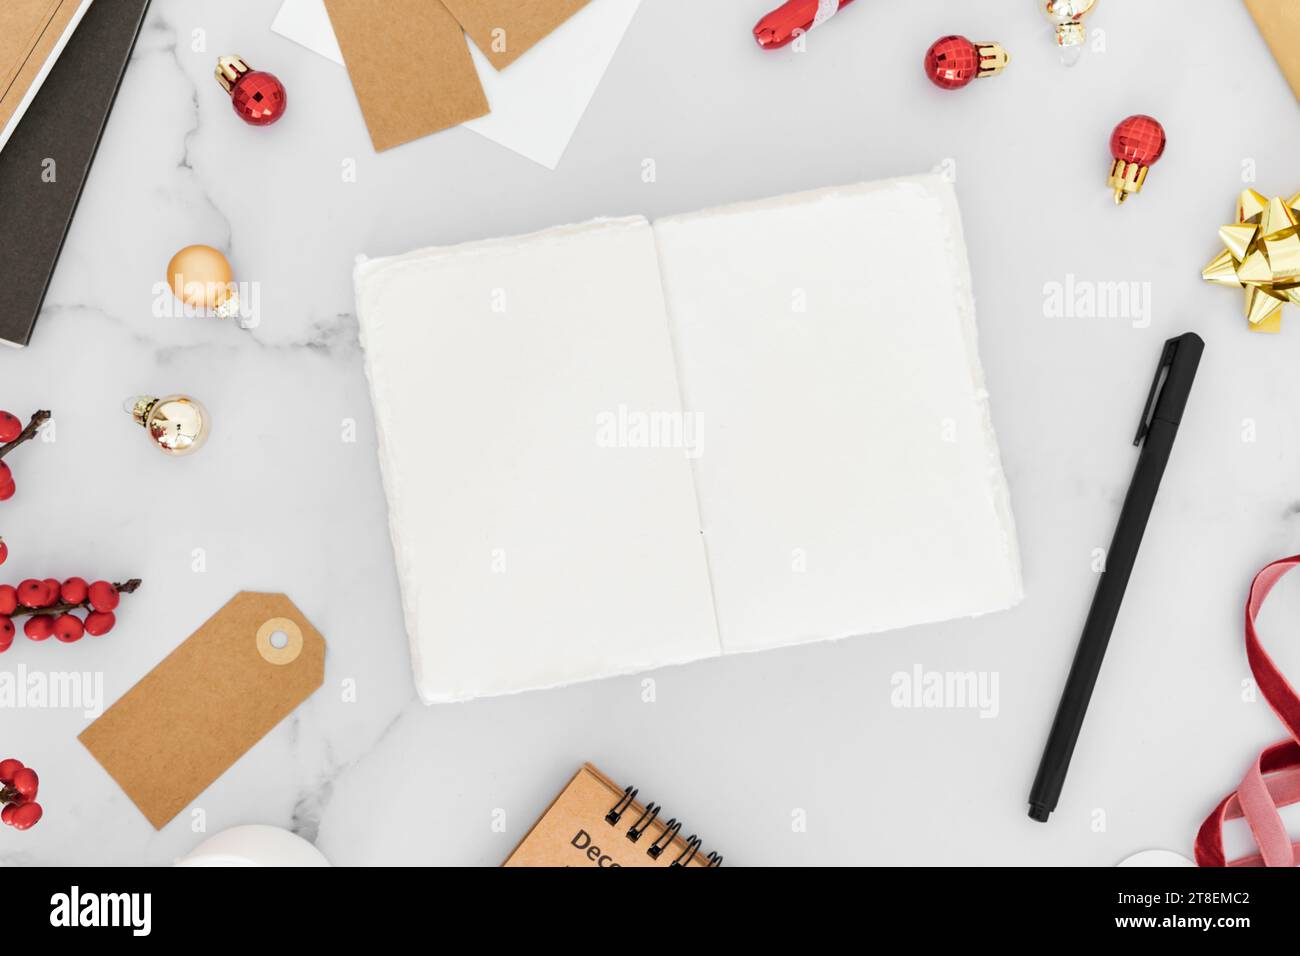 Cadre de Noël rouge à partir de décorations, paquet cadeau, bougies et cahier vierge ouvert sur fond de table blanc. Noël, nouvel an, concept d'hiver. FL Banque D'Images